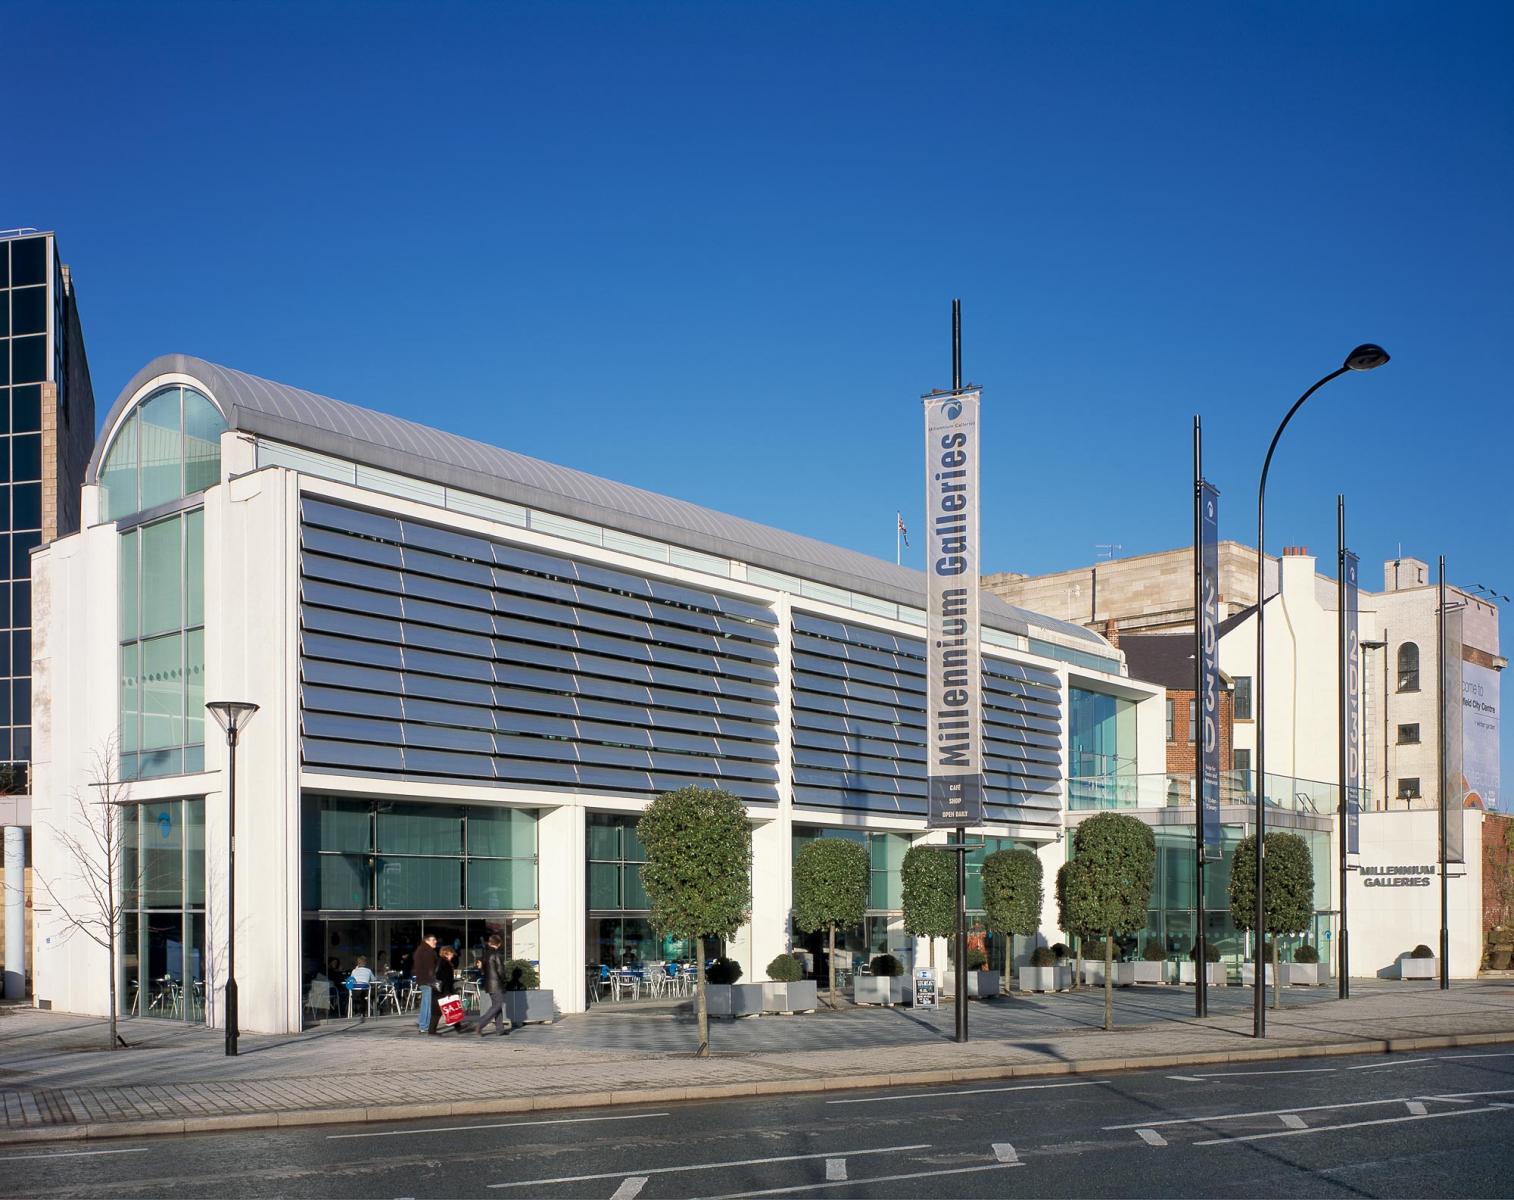 Millennium Galleries, Sheffield - Arundel Gate façade and forecourt